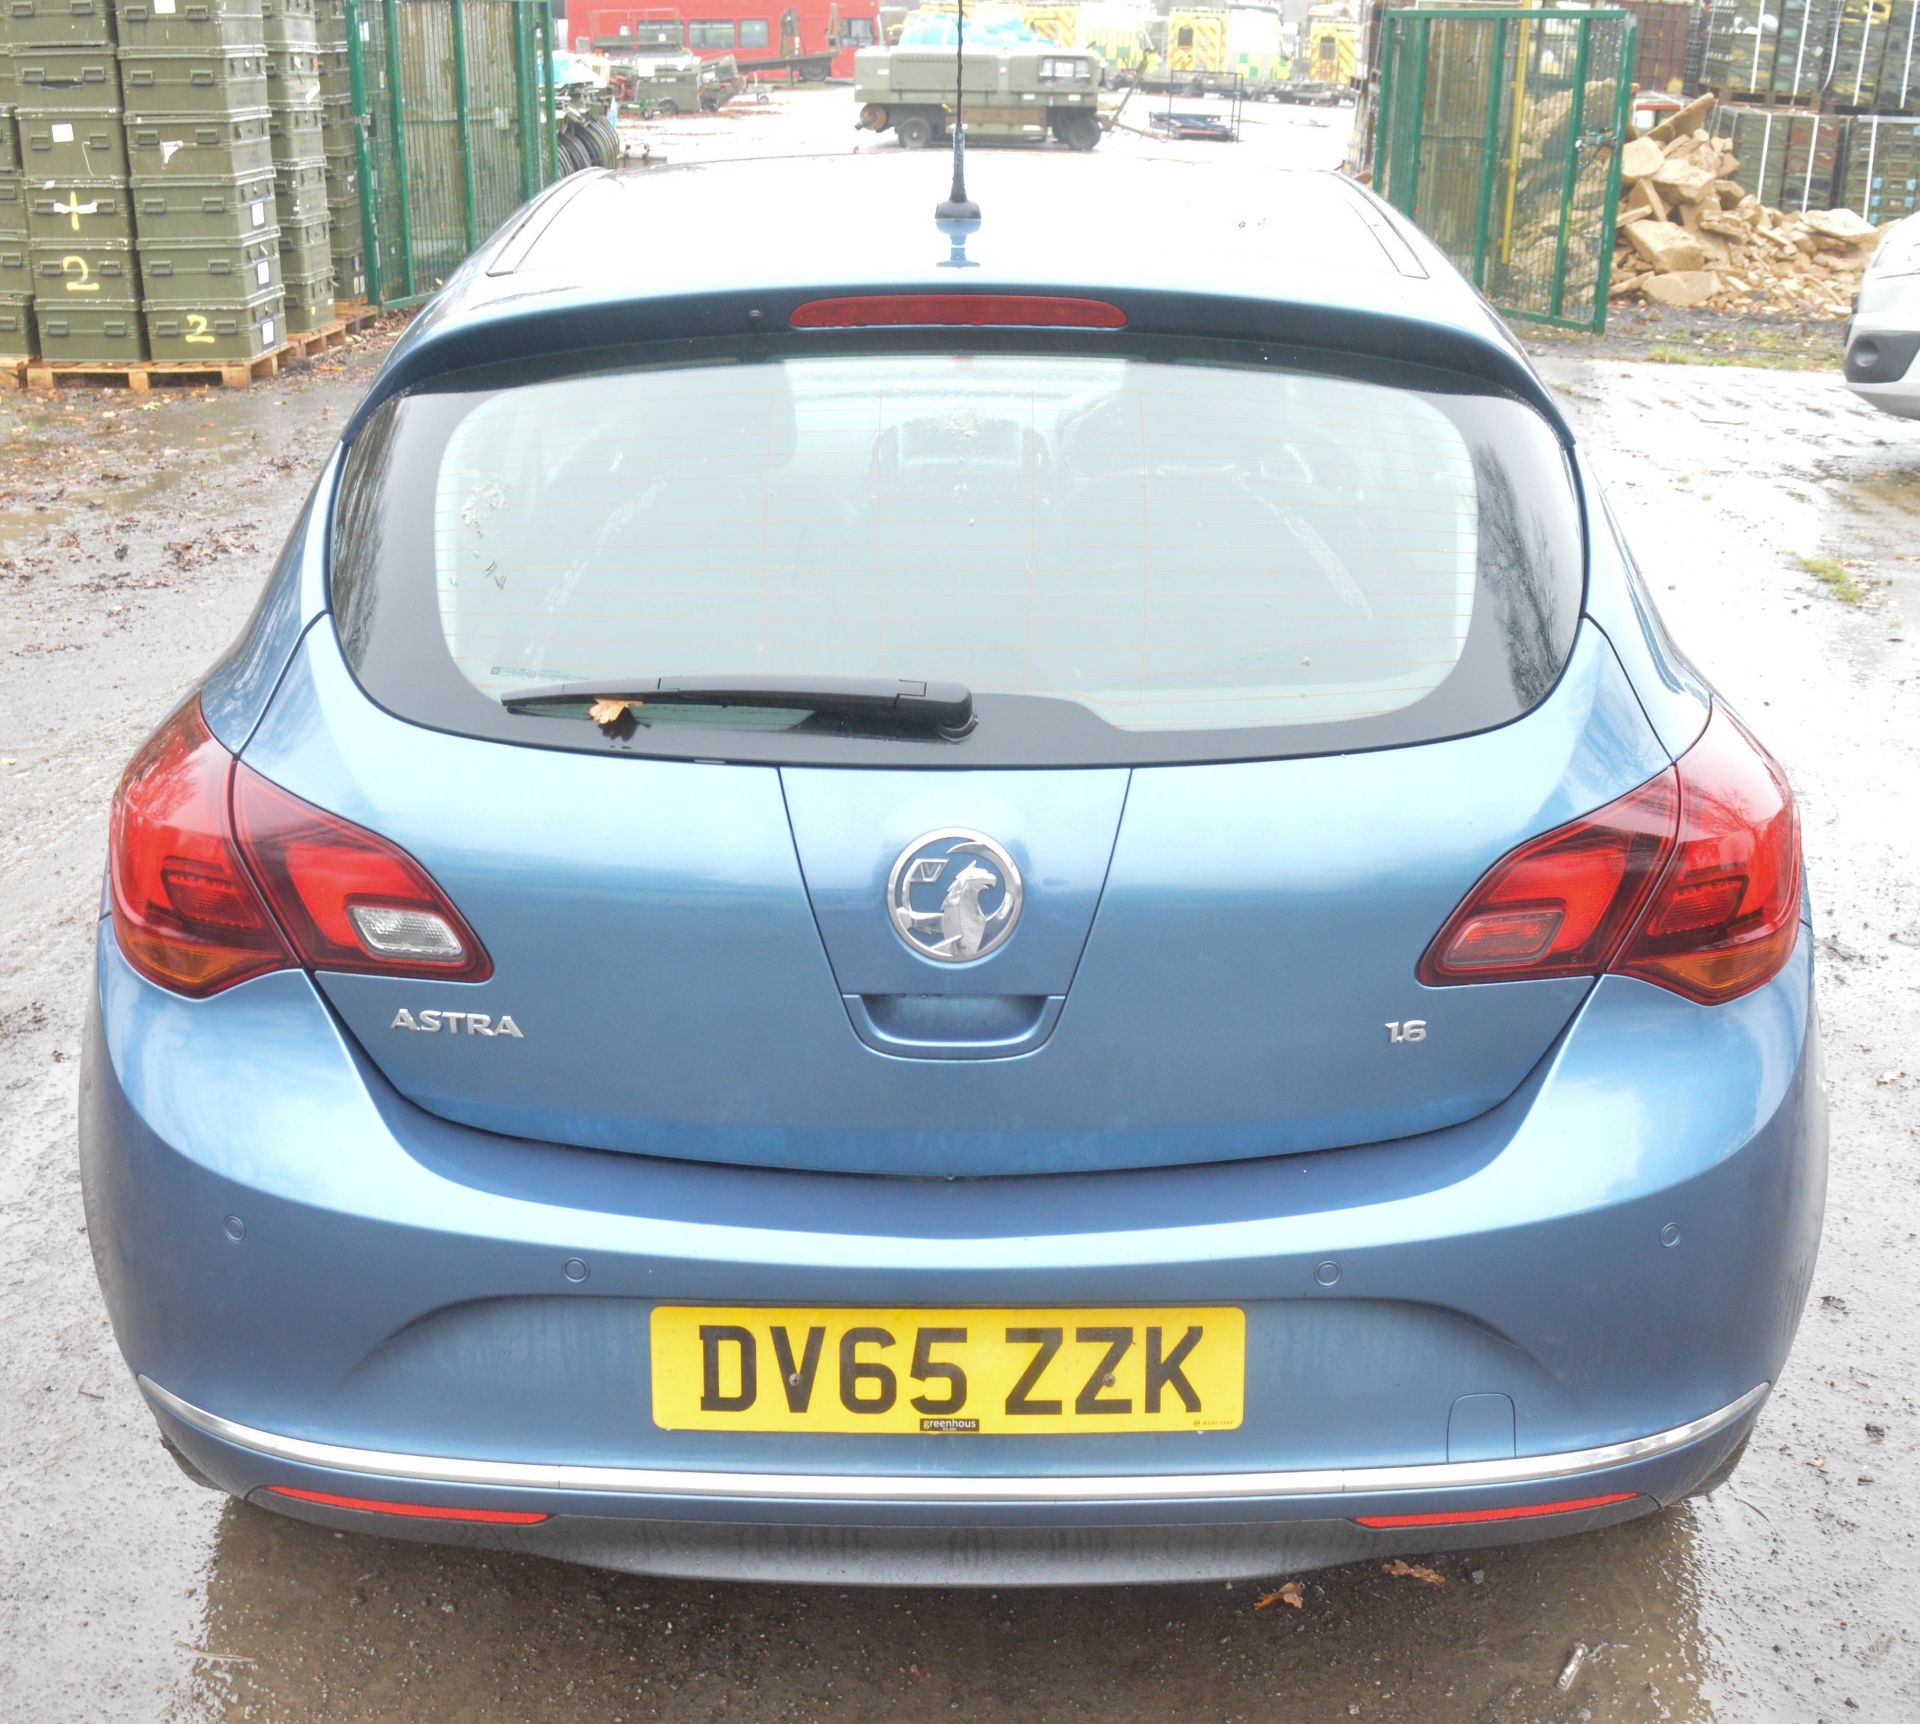 Vauxhall Astra 1.6 i VVT 16v Elite 5dr Hatchback Registration number: DV65 ZZK Date of registration: - Image 6 of 8